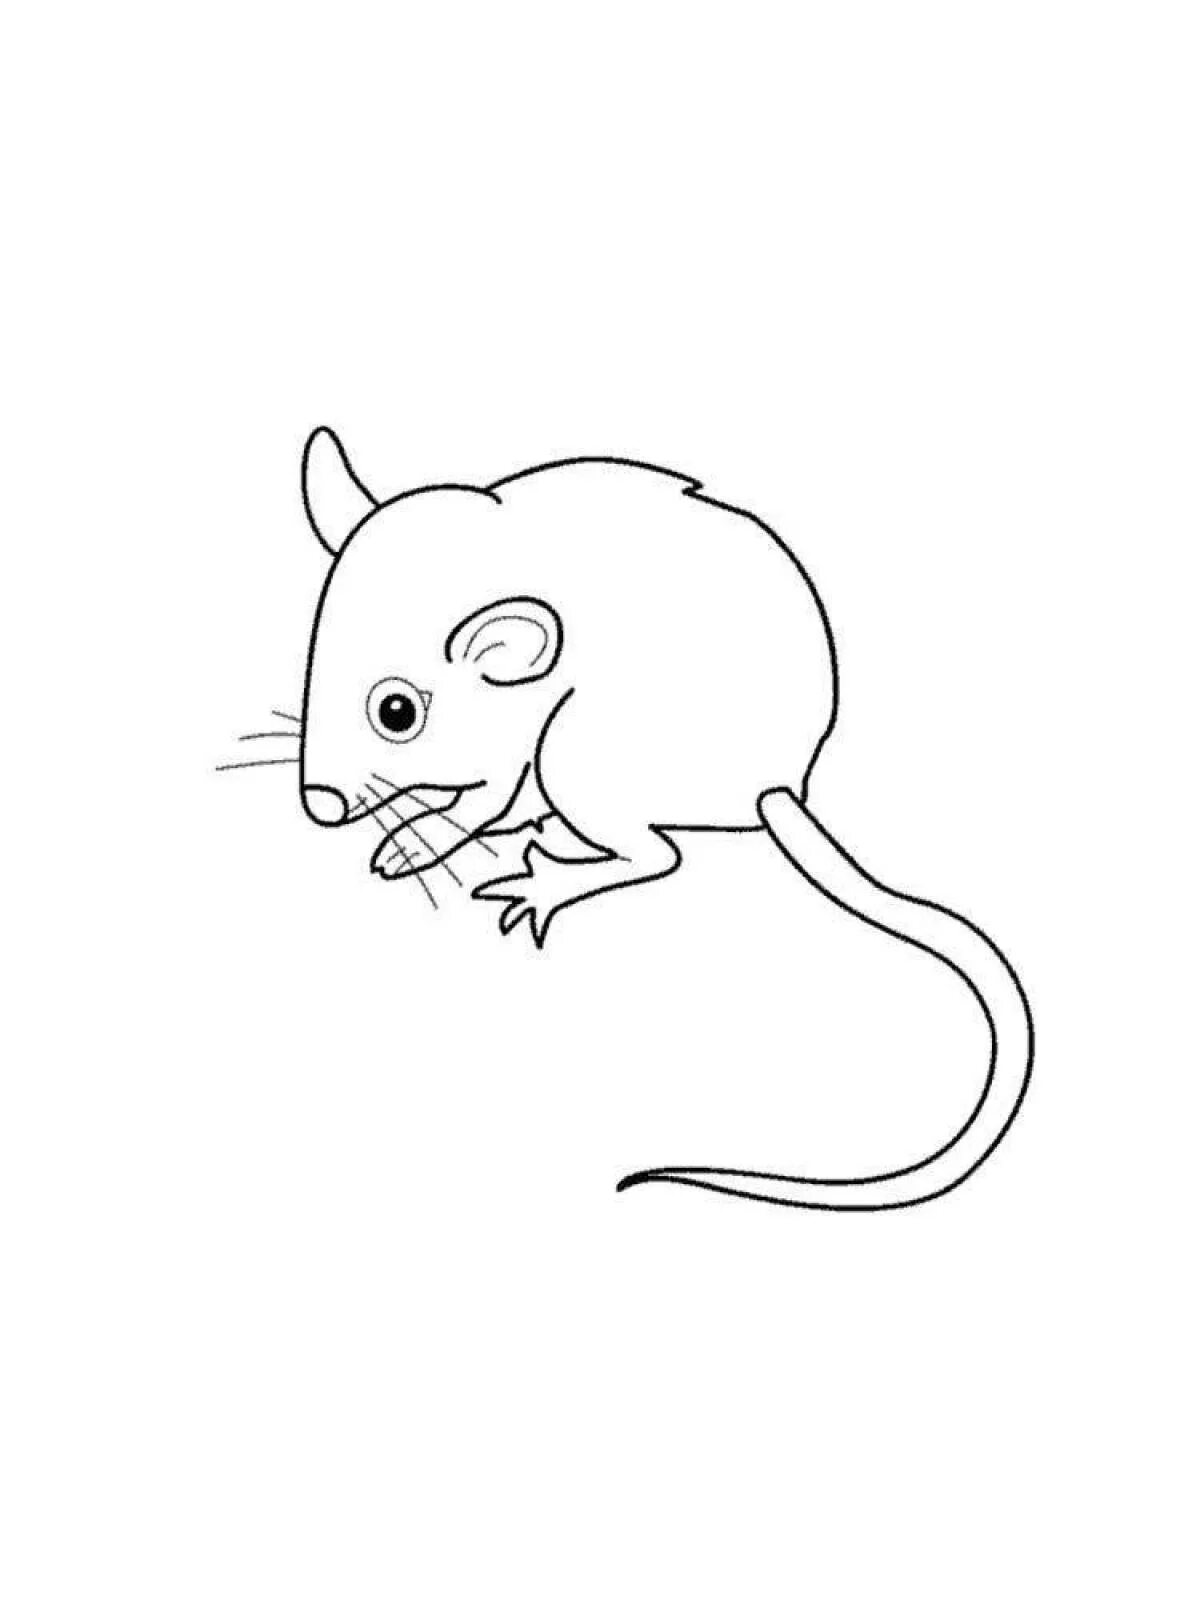 Мышь раскраска. Раскраска Миша. Раскраска мышонок. Мышь раскраска для детей. Раскраска мышь распечатать